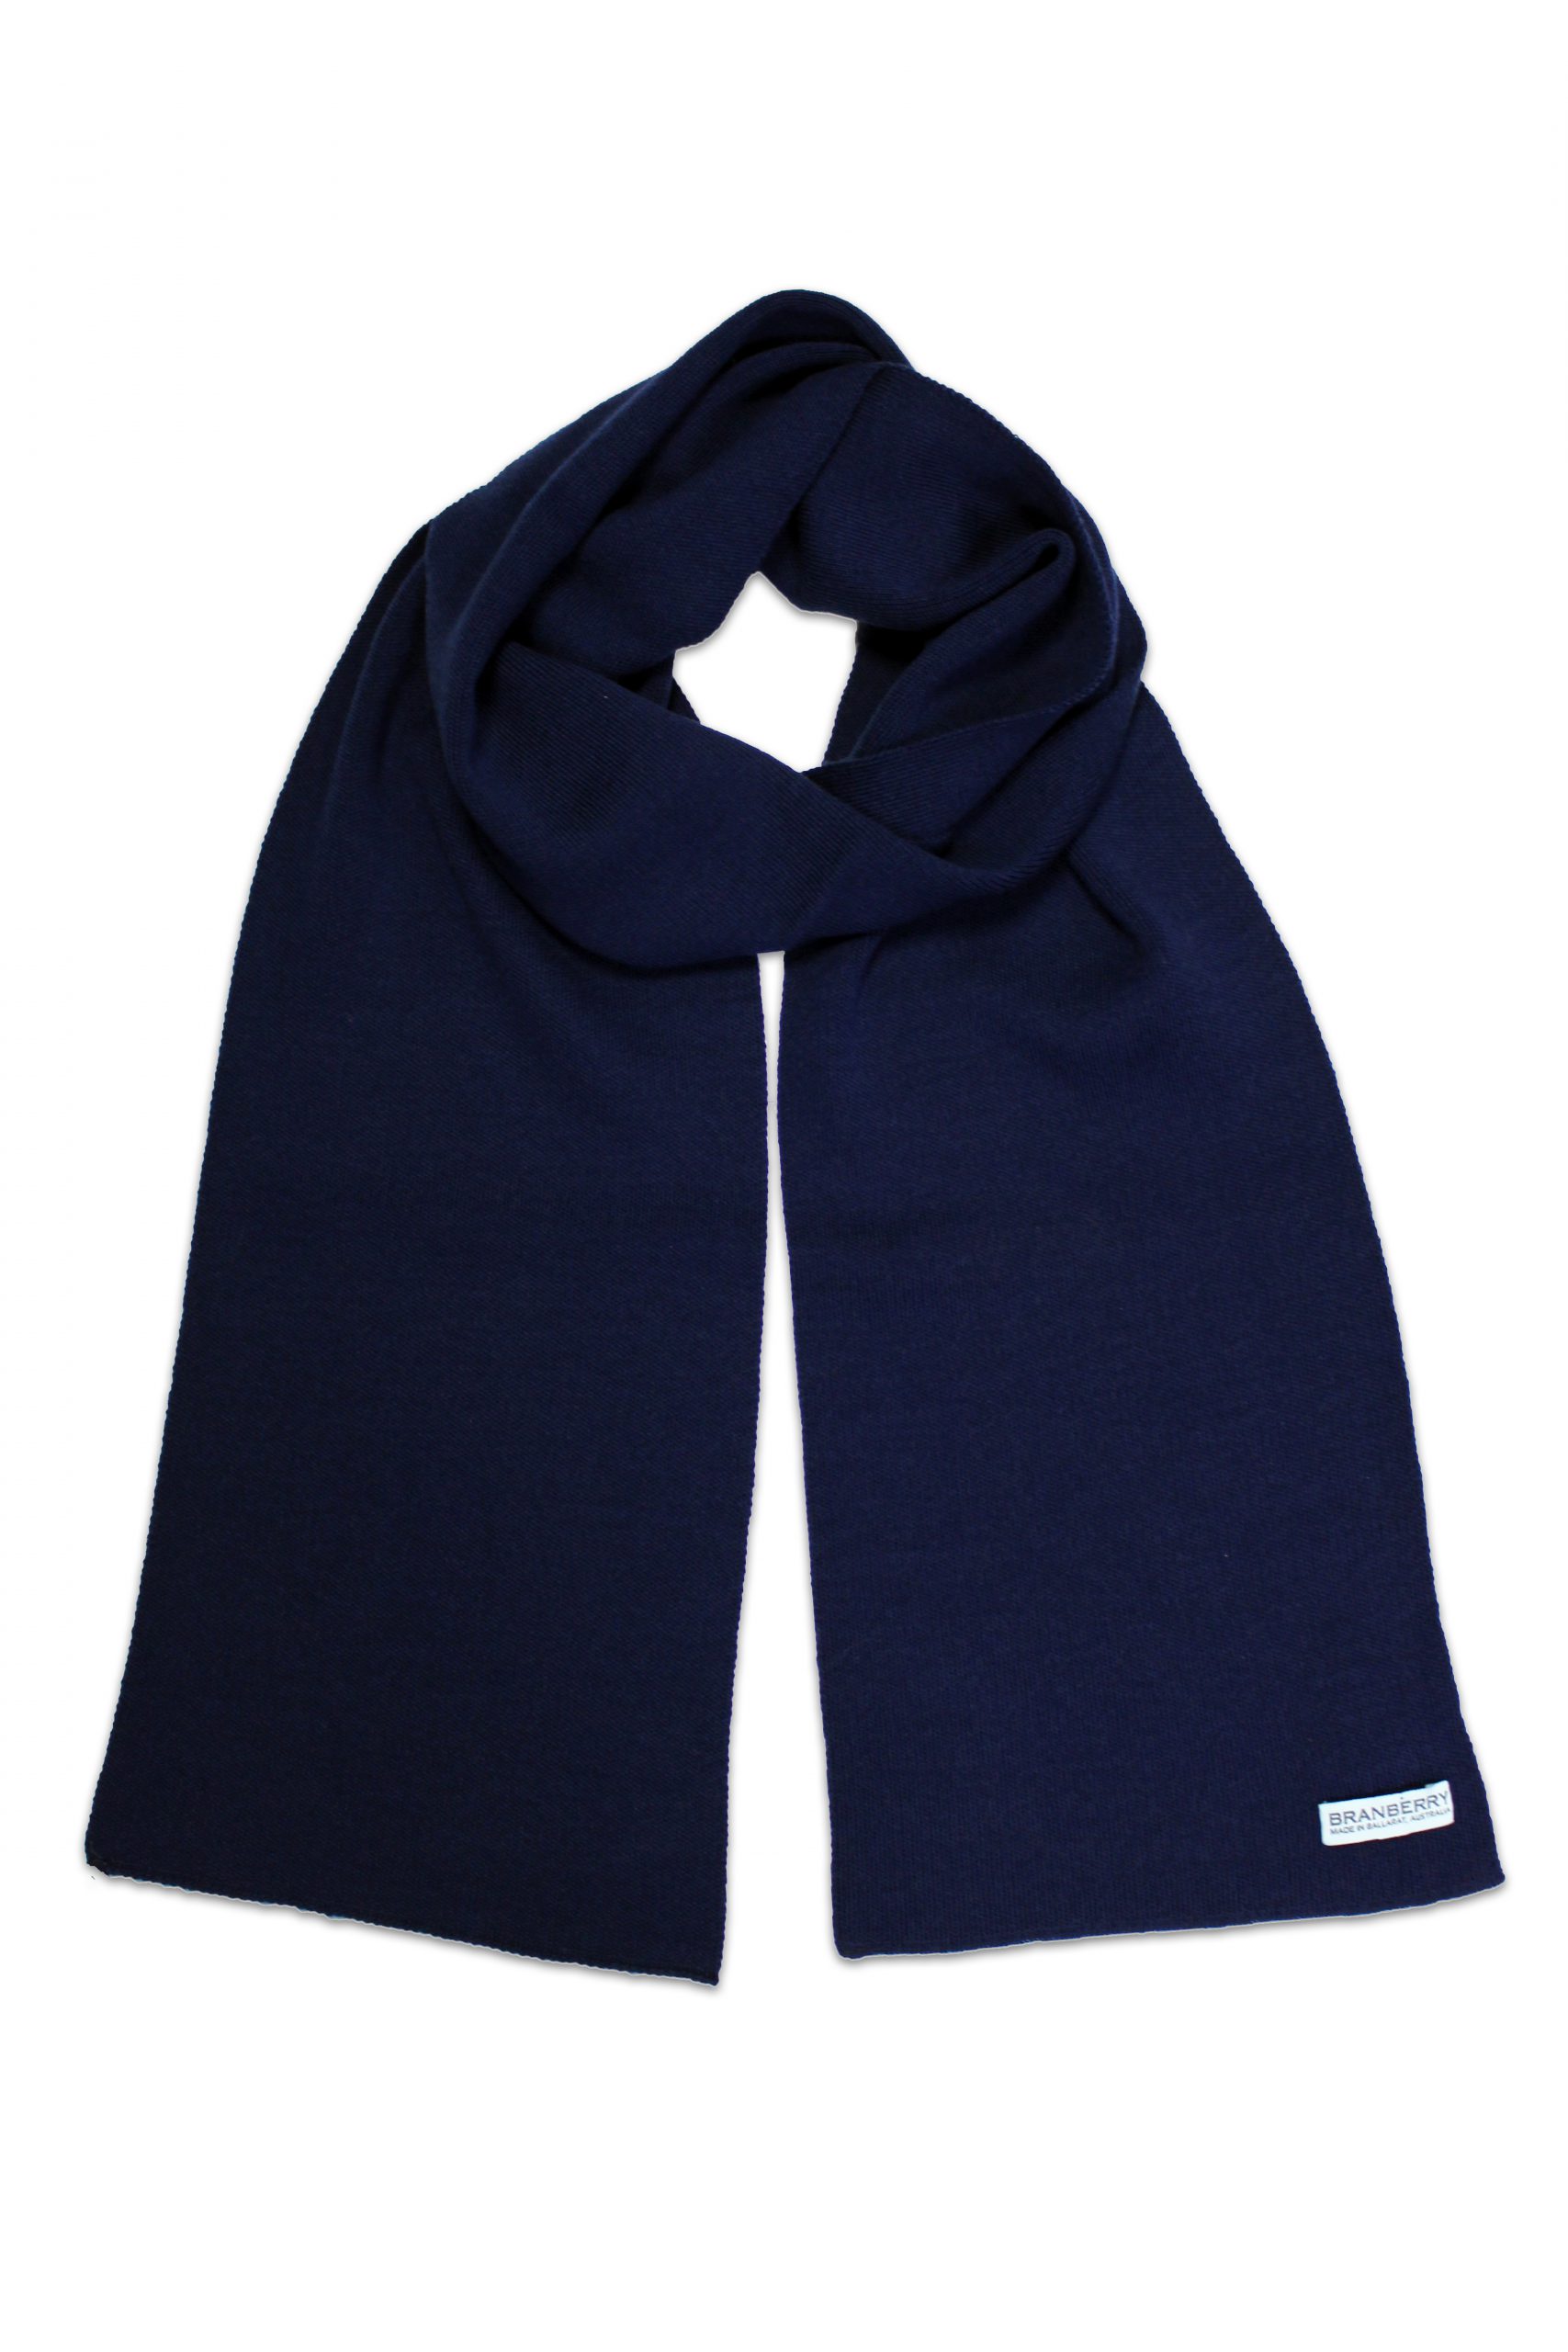 Plain Adult Merino Wool Scarves in Navy & Blue Tones - Interknit ...